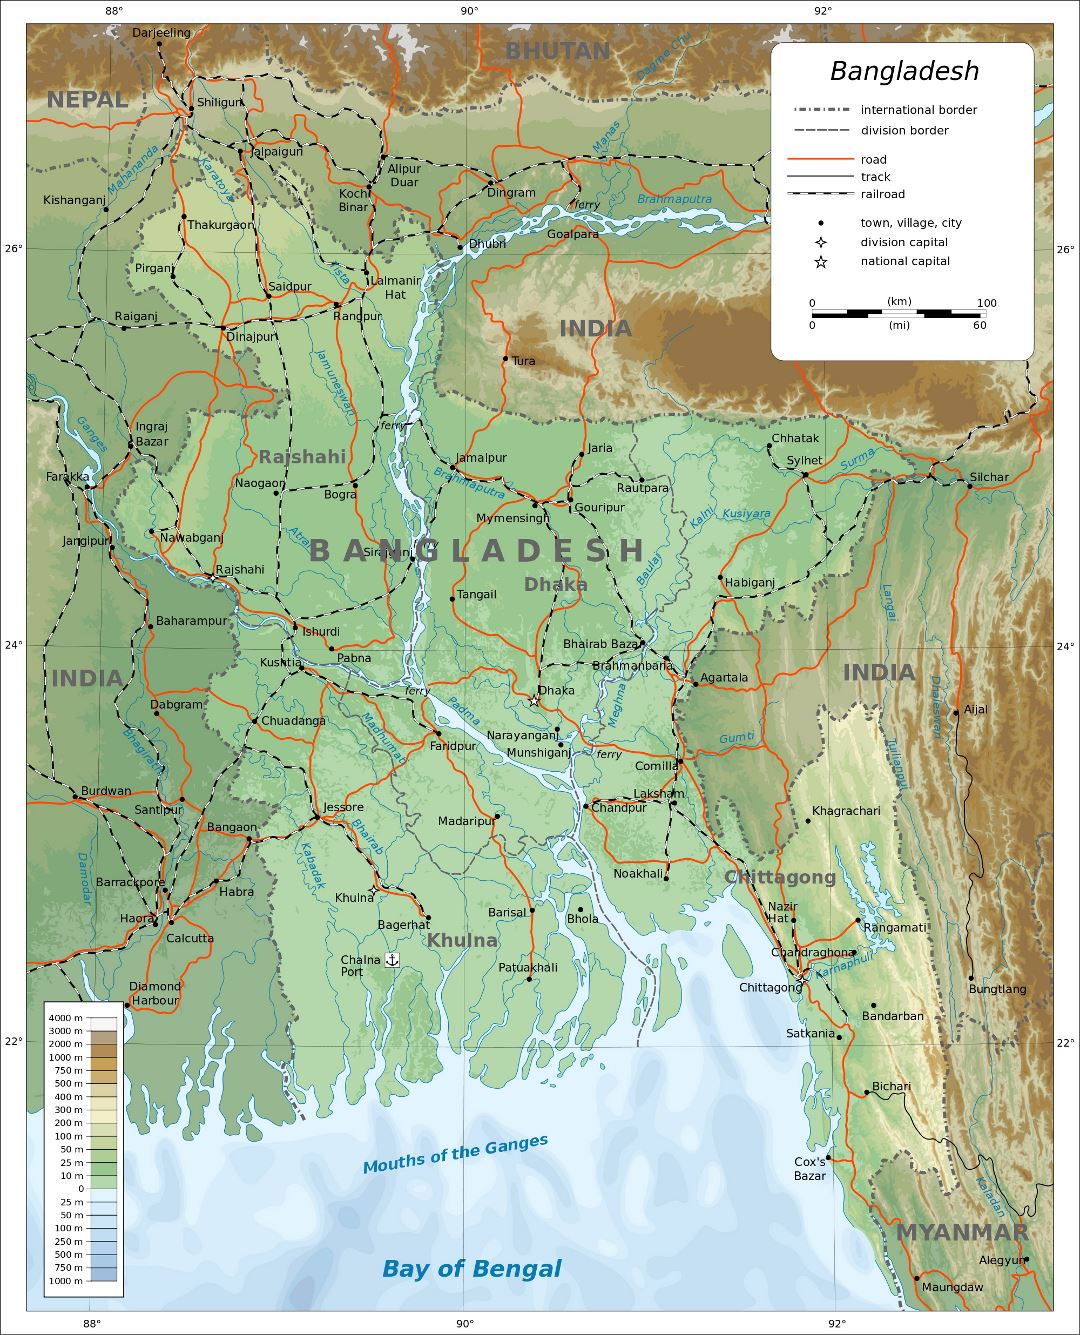 Grande detallado mapa físico de Bangladesh